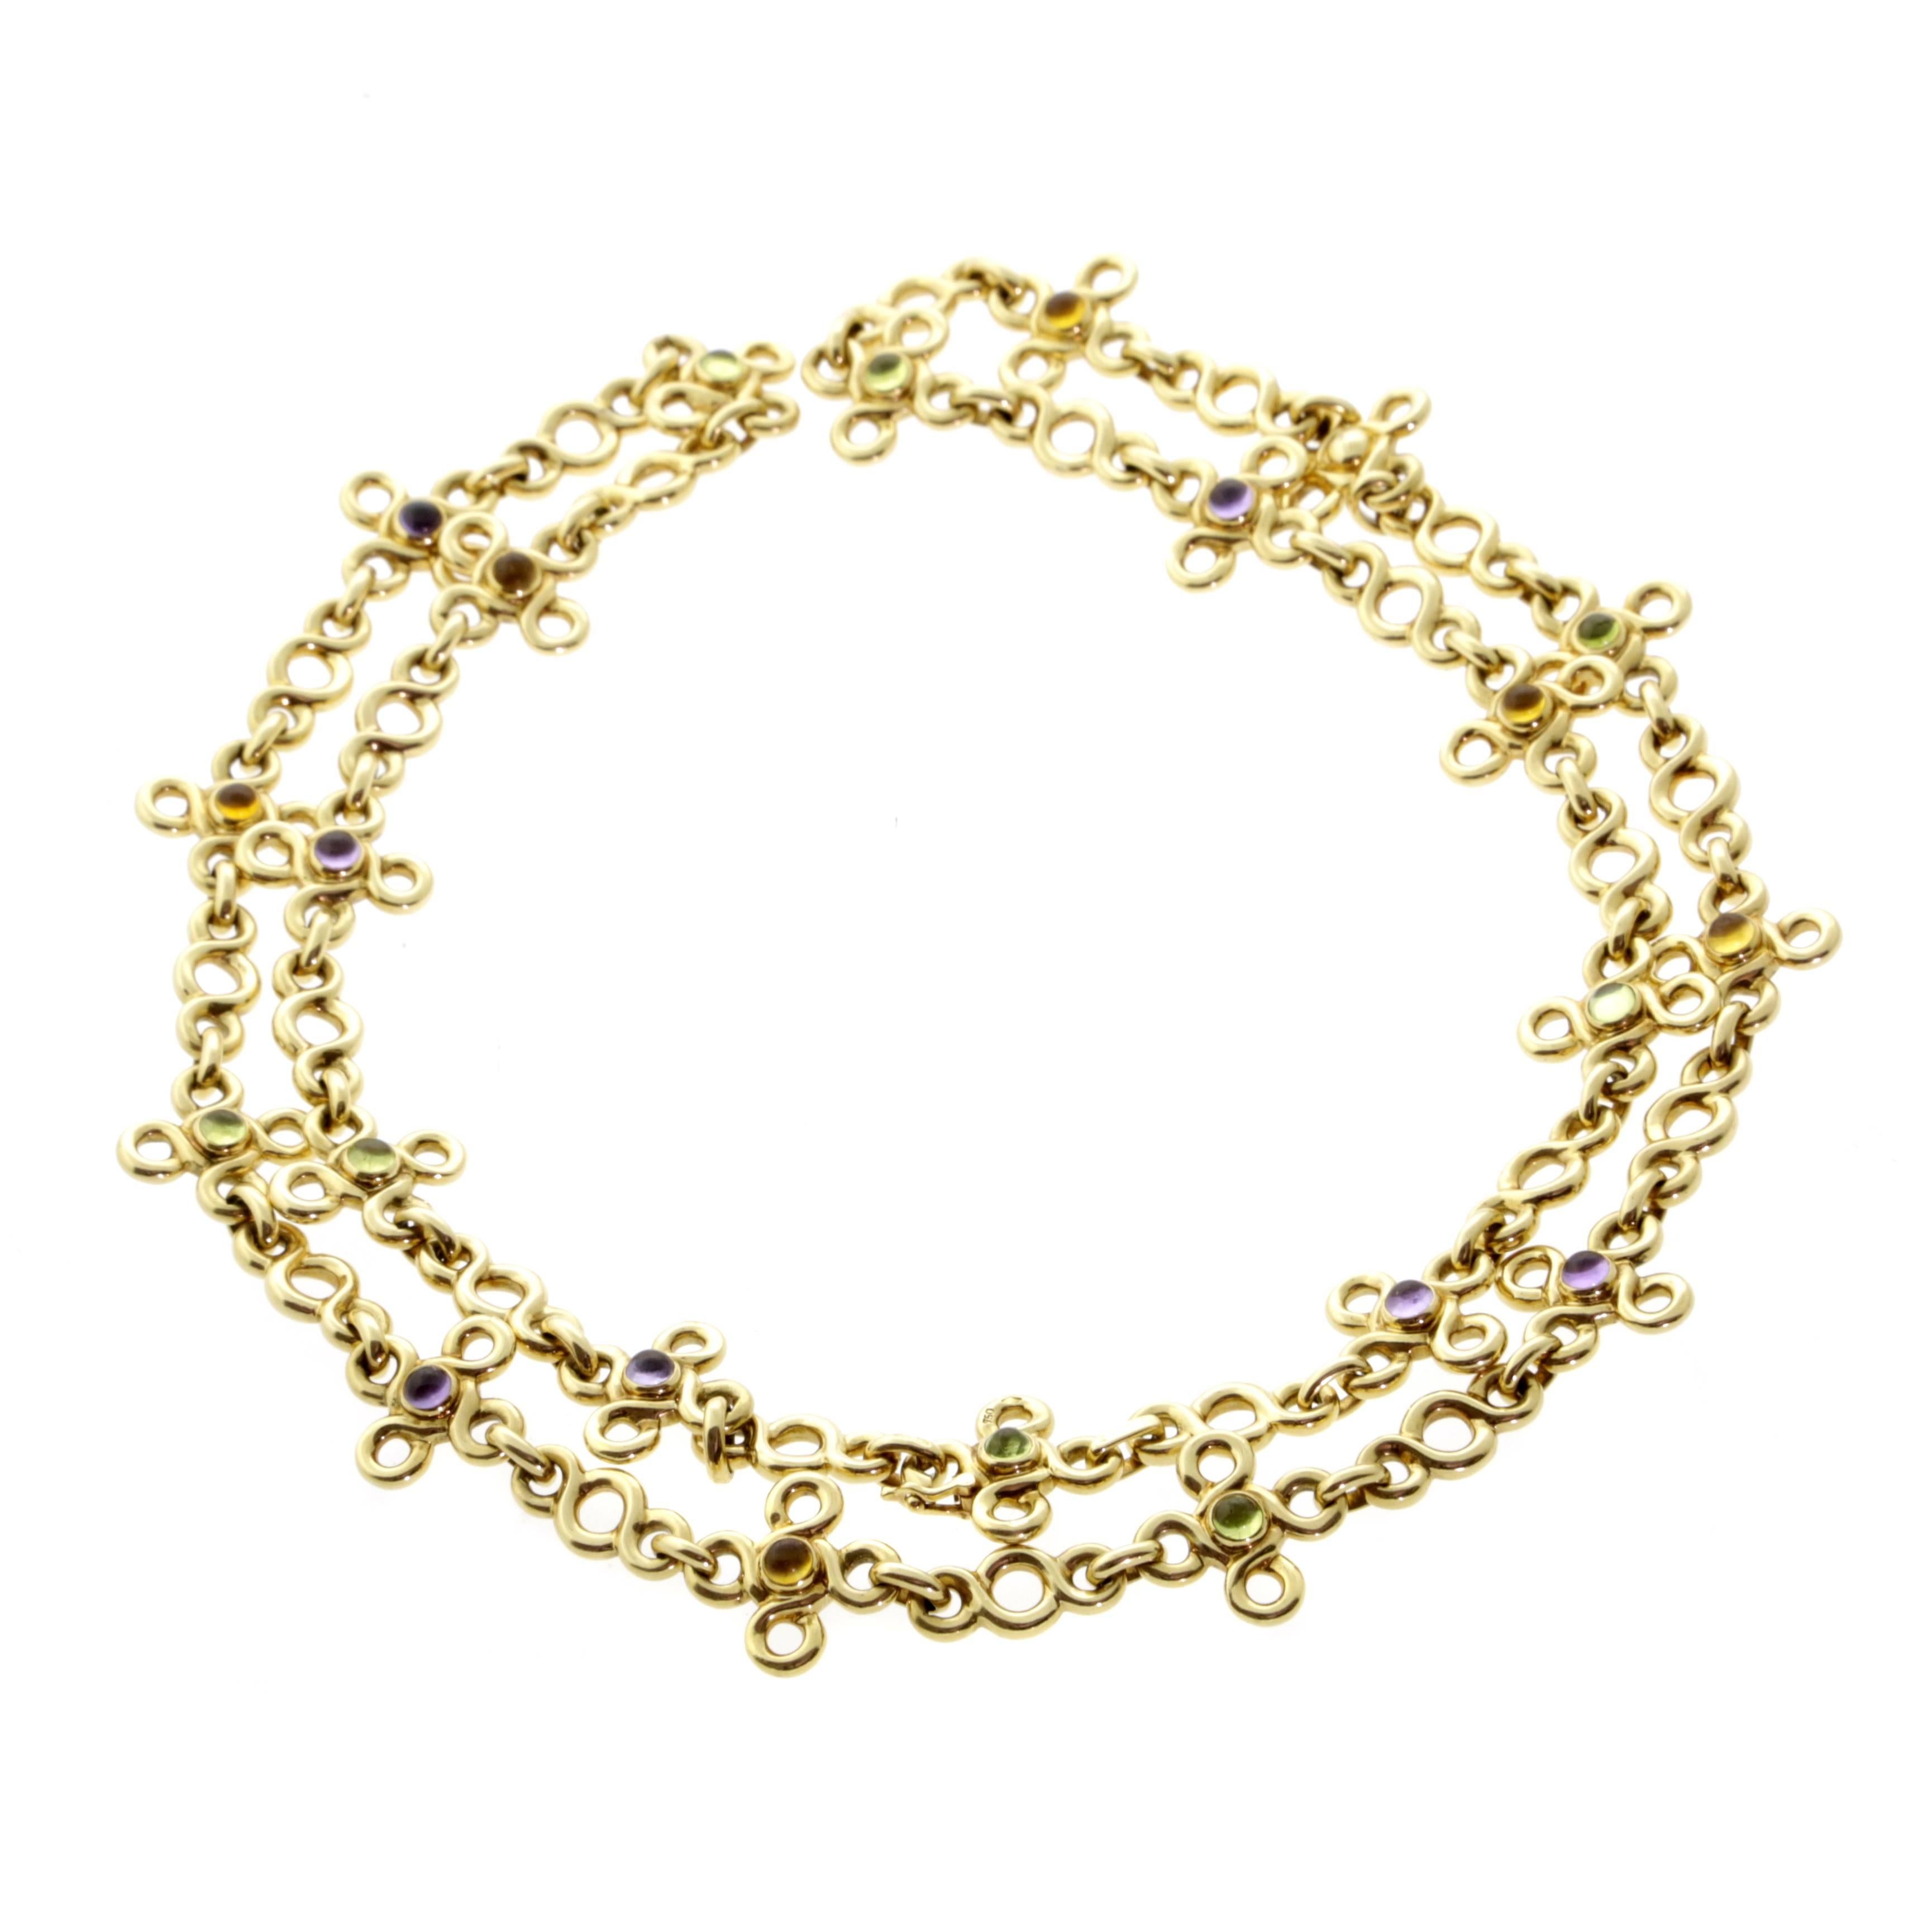 Eine fabelhafte Chanel Sautoir Halskette mit mehrfarbigen Edelsteinen  die so positioniert sind, dass sie sich wie die Farben des Regenbogens gegenseitig ergänzen, gefertigt aus 18 Karat Gelbgold. Die Halskette kann als Sautior oder als Halsband